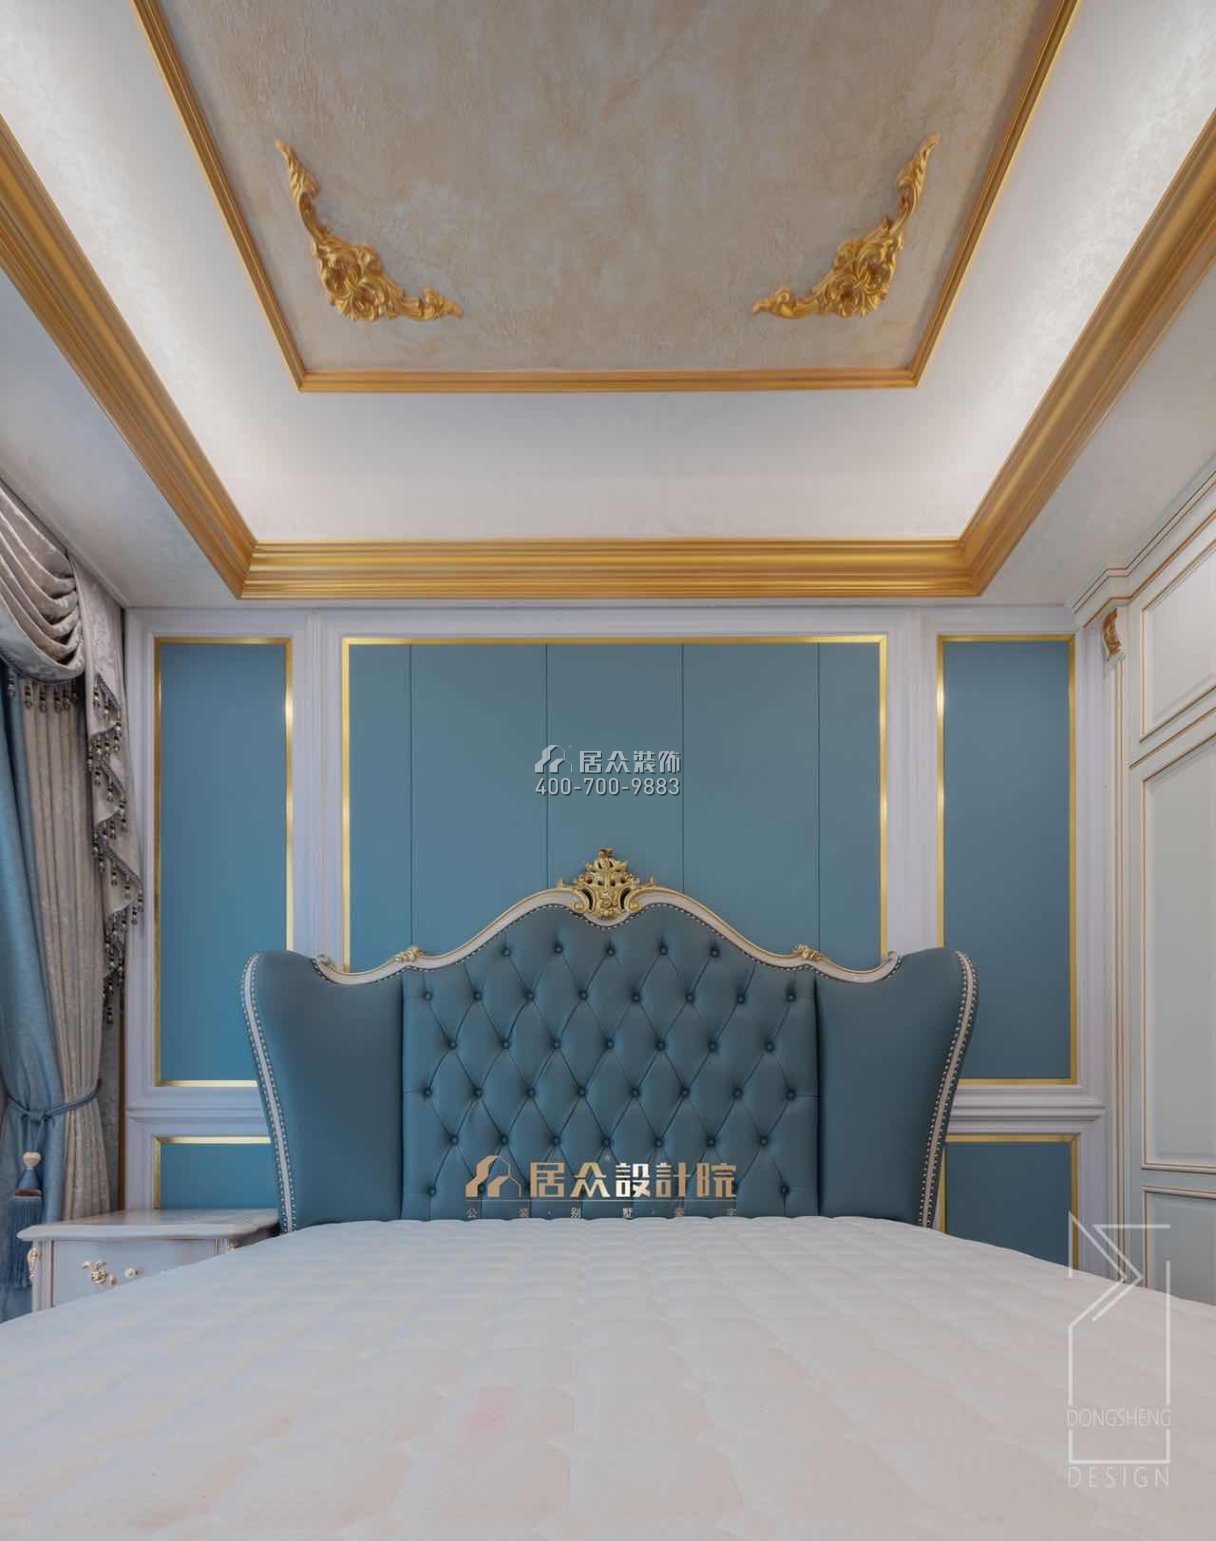 新世纪领居1080平方米欧式风格别墅户型卧室装修效果图